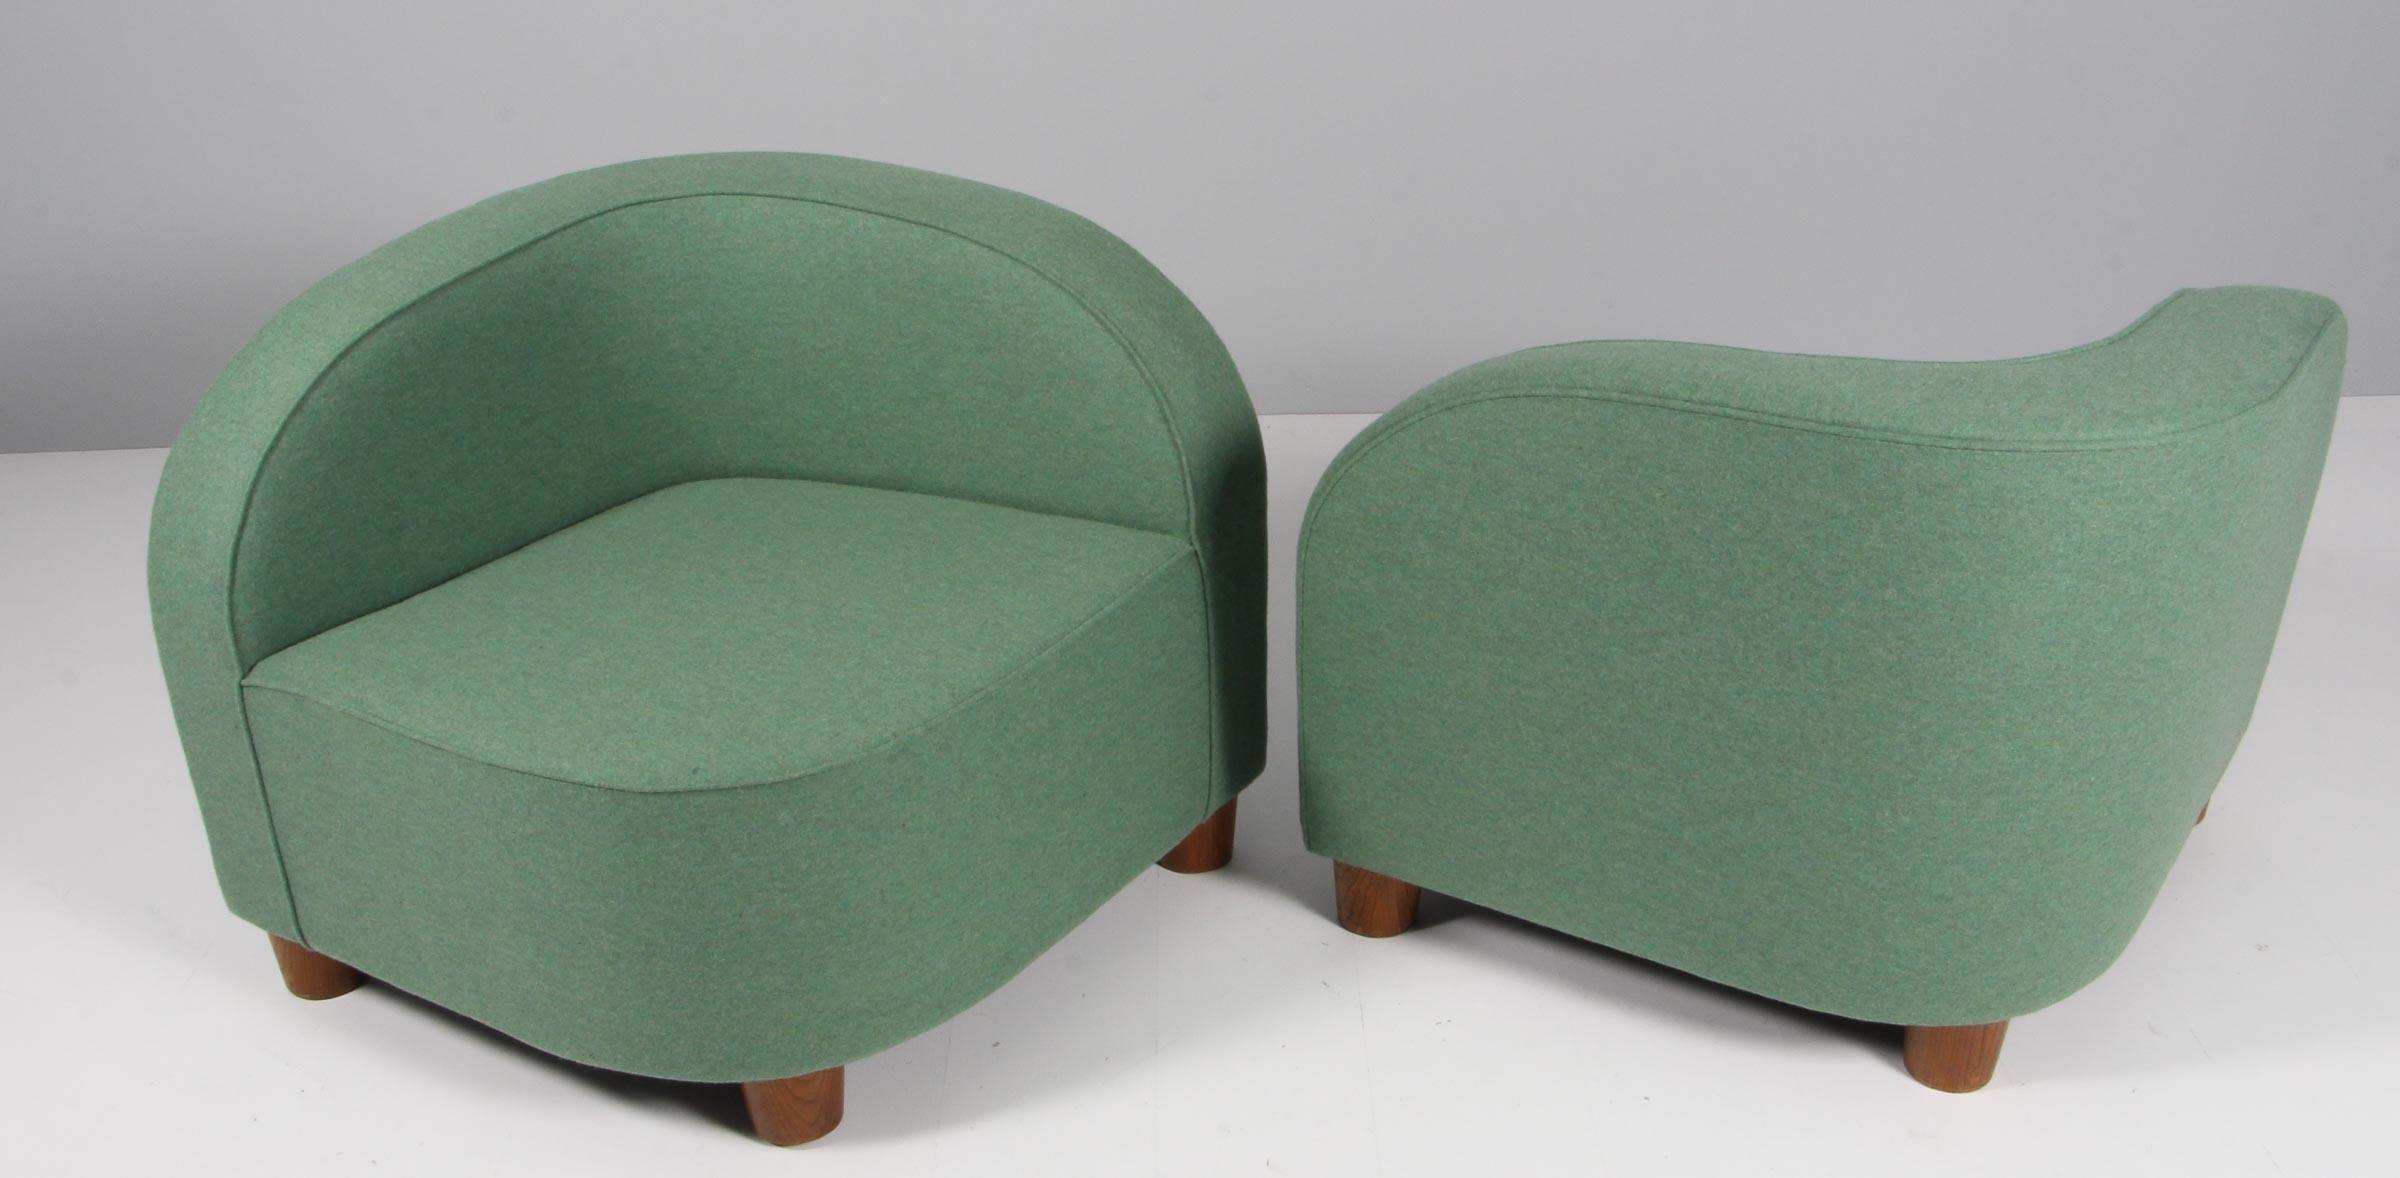 Ein schwedischer Tischler, der ein Paar Loungesessel herstellt, die auch als Liegesessel verwendet werden können. Neu gepolstert mit grüner Wolle

Beine aus Eiche.

Hergestellt in den 1940er Jahren.